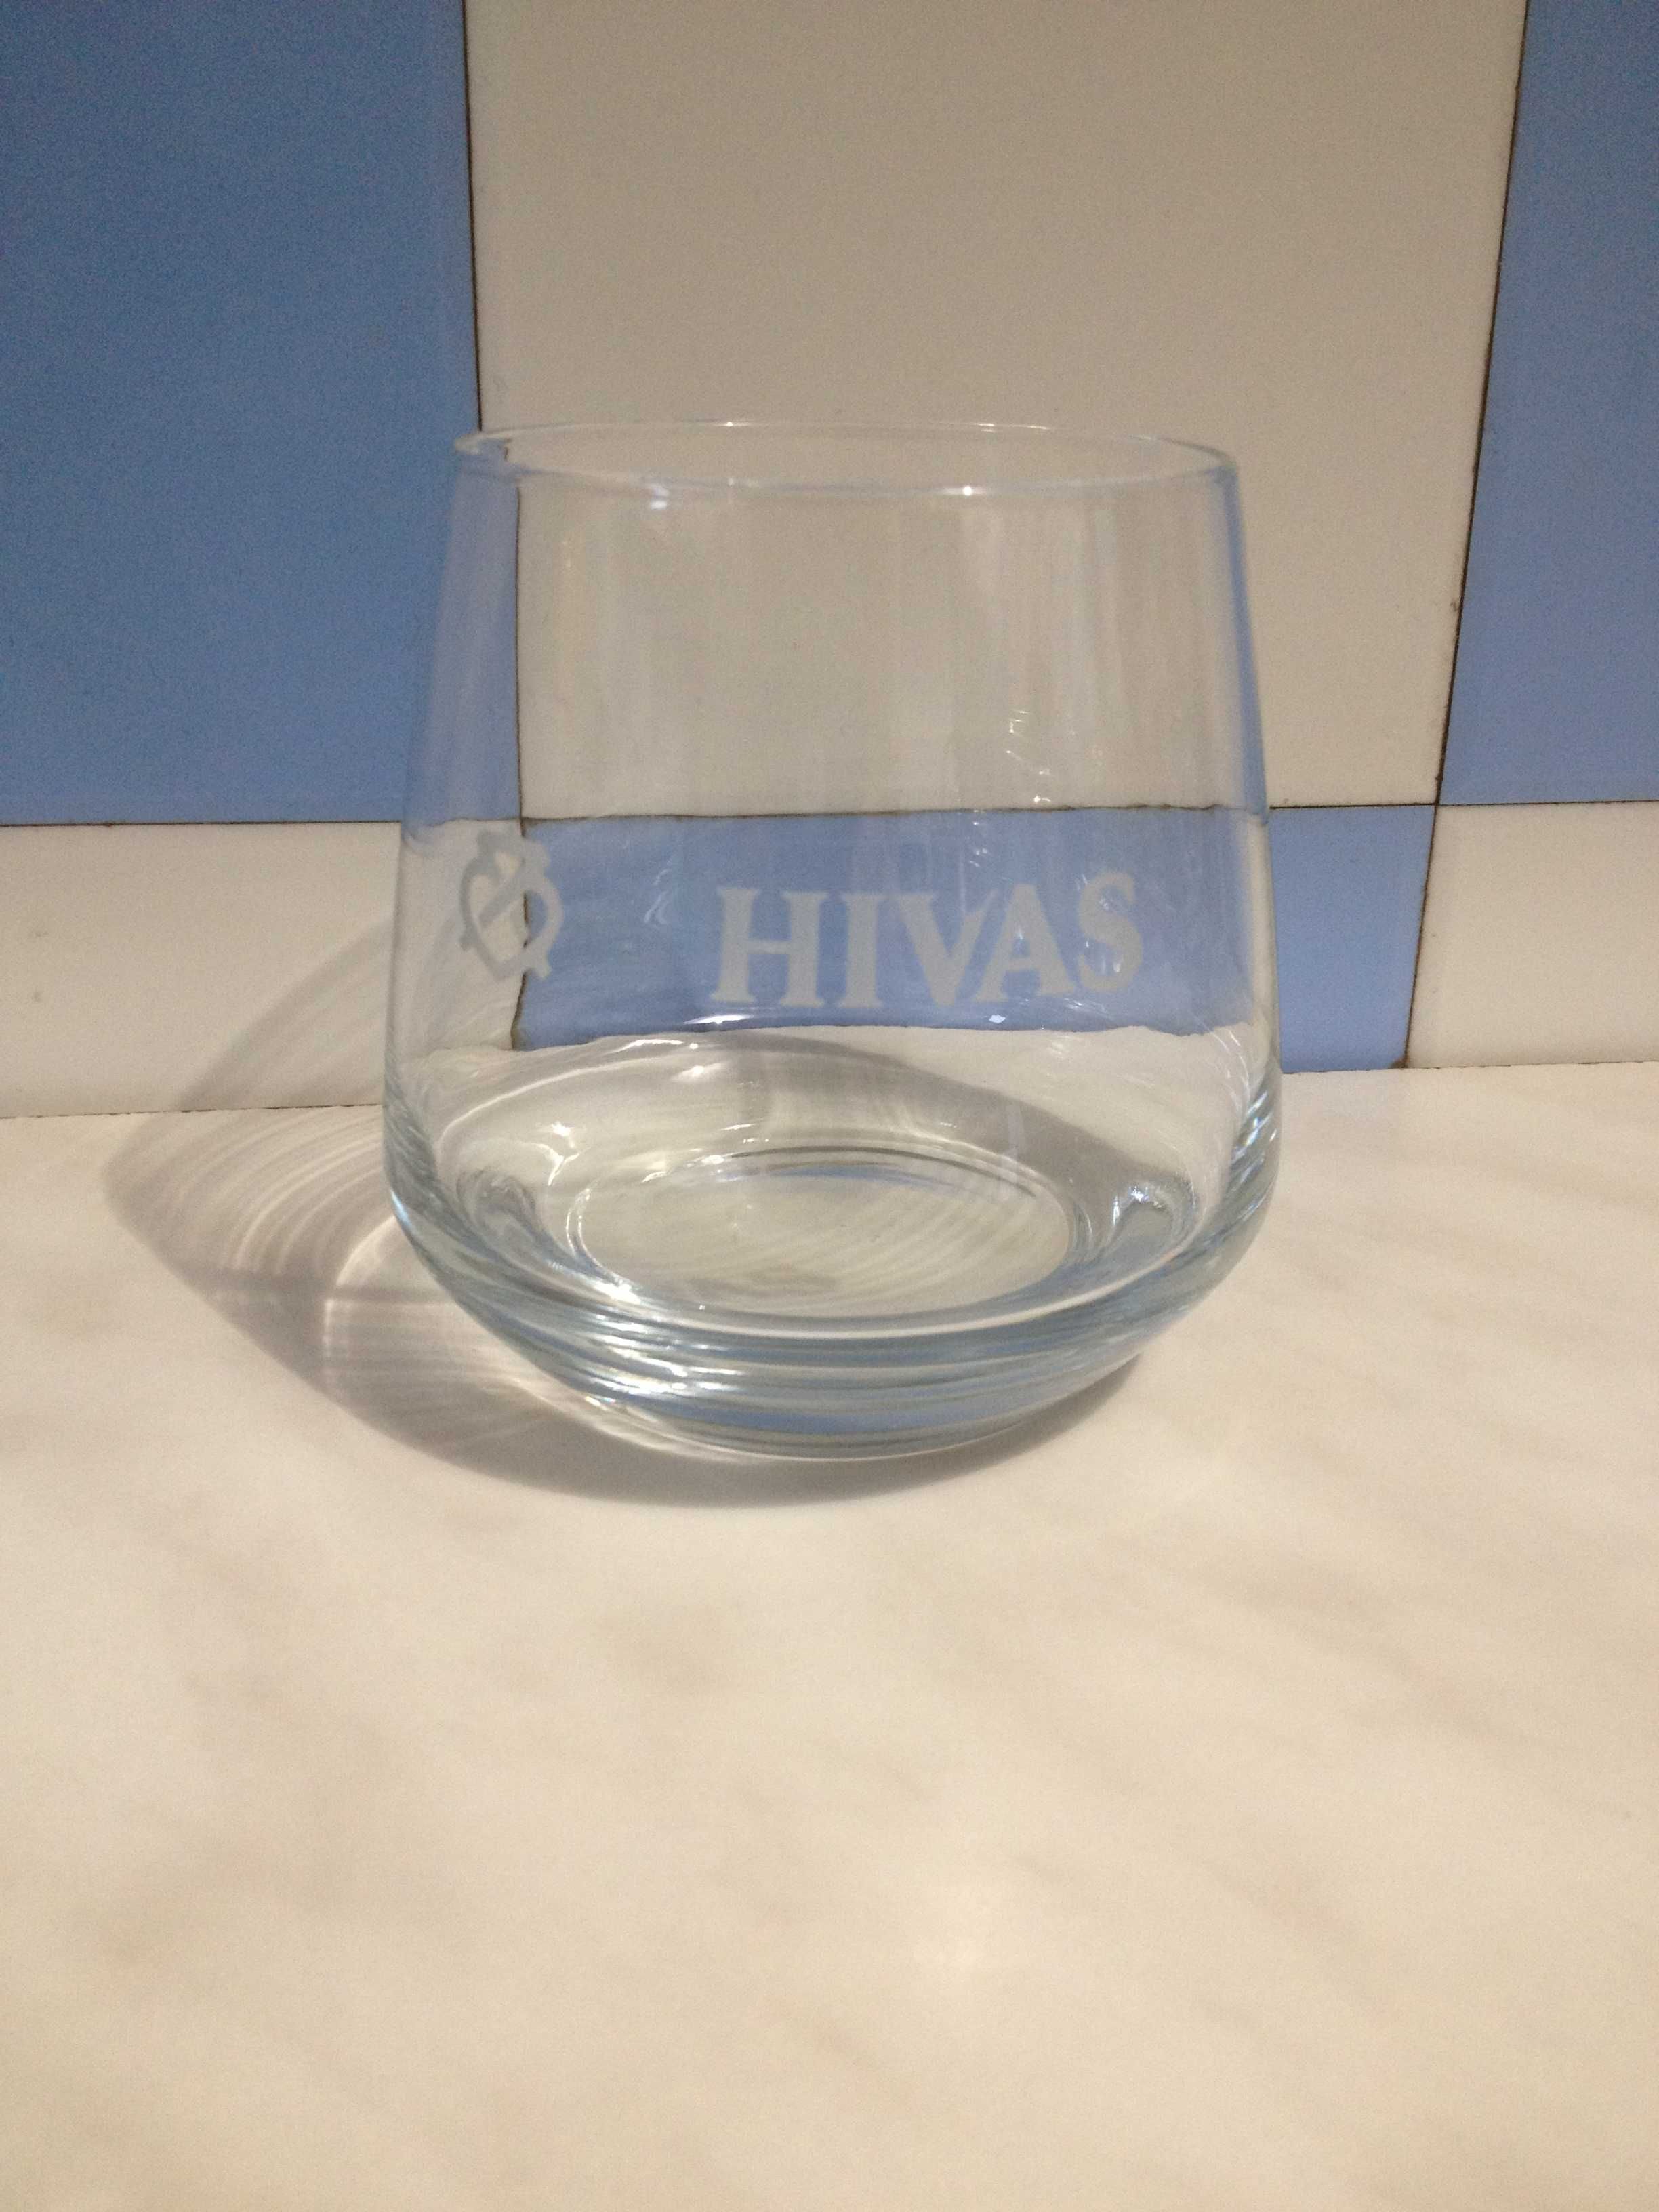 Szklanka do drinków kolekcjonerska Hivas (Chivas) z błędem